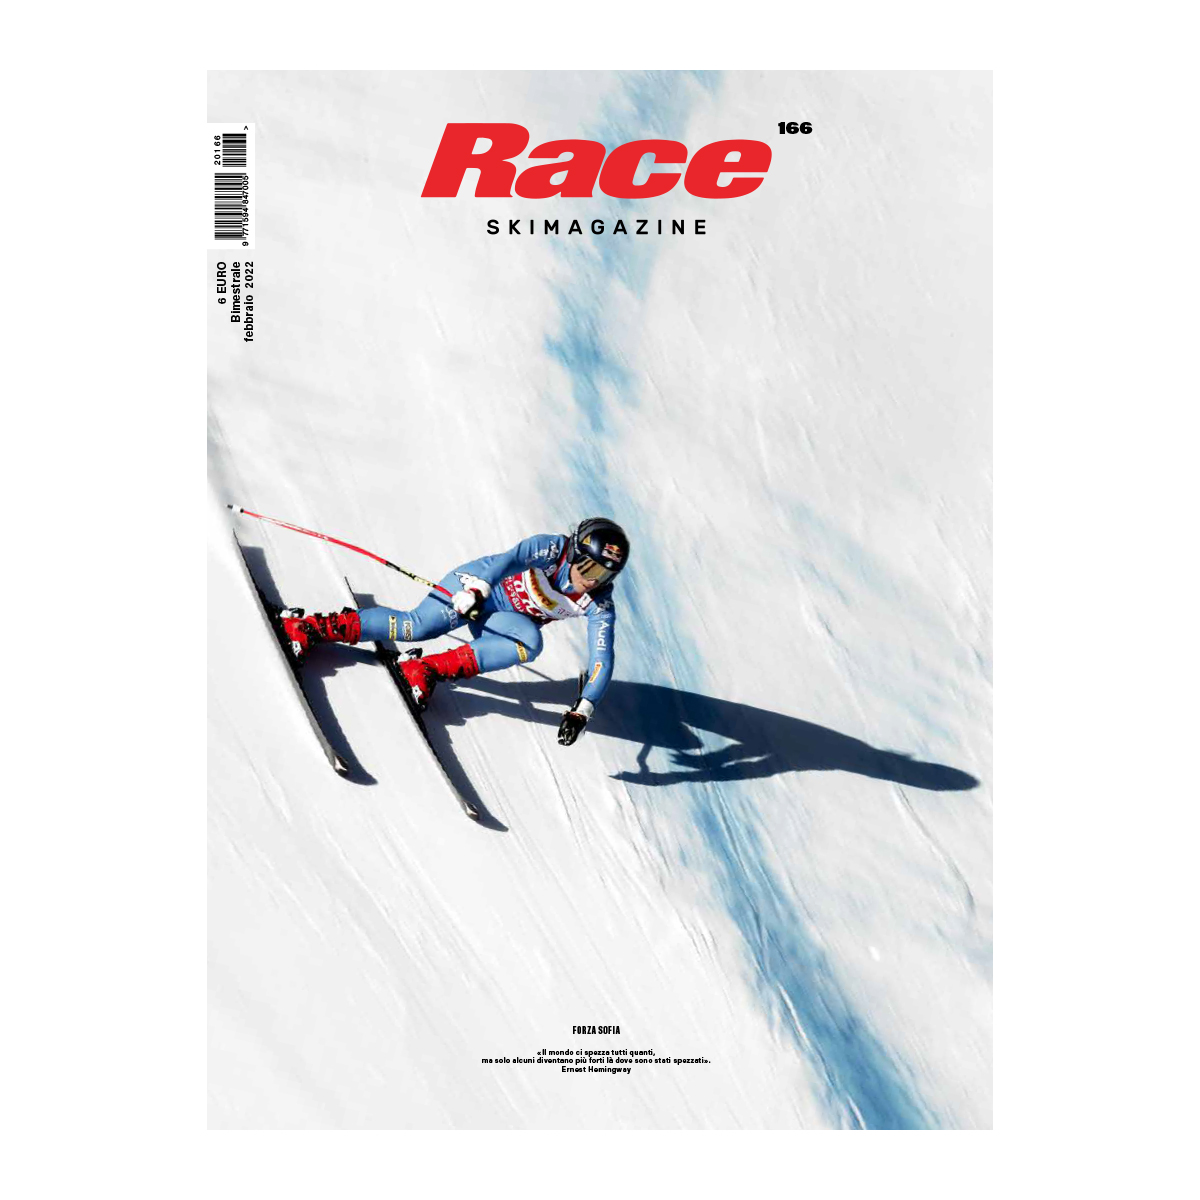 Raceskimagazine it: Il tuo vantaggio in pista